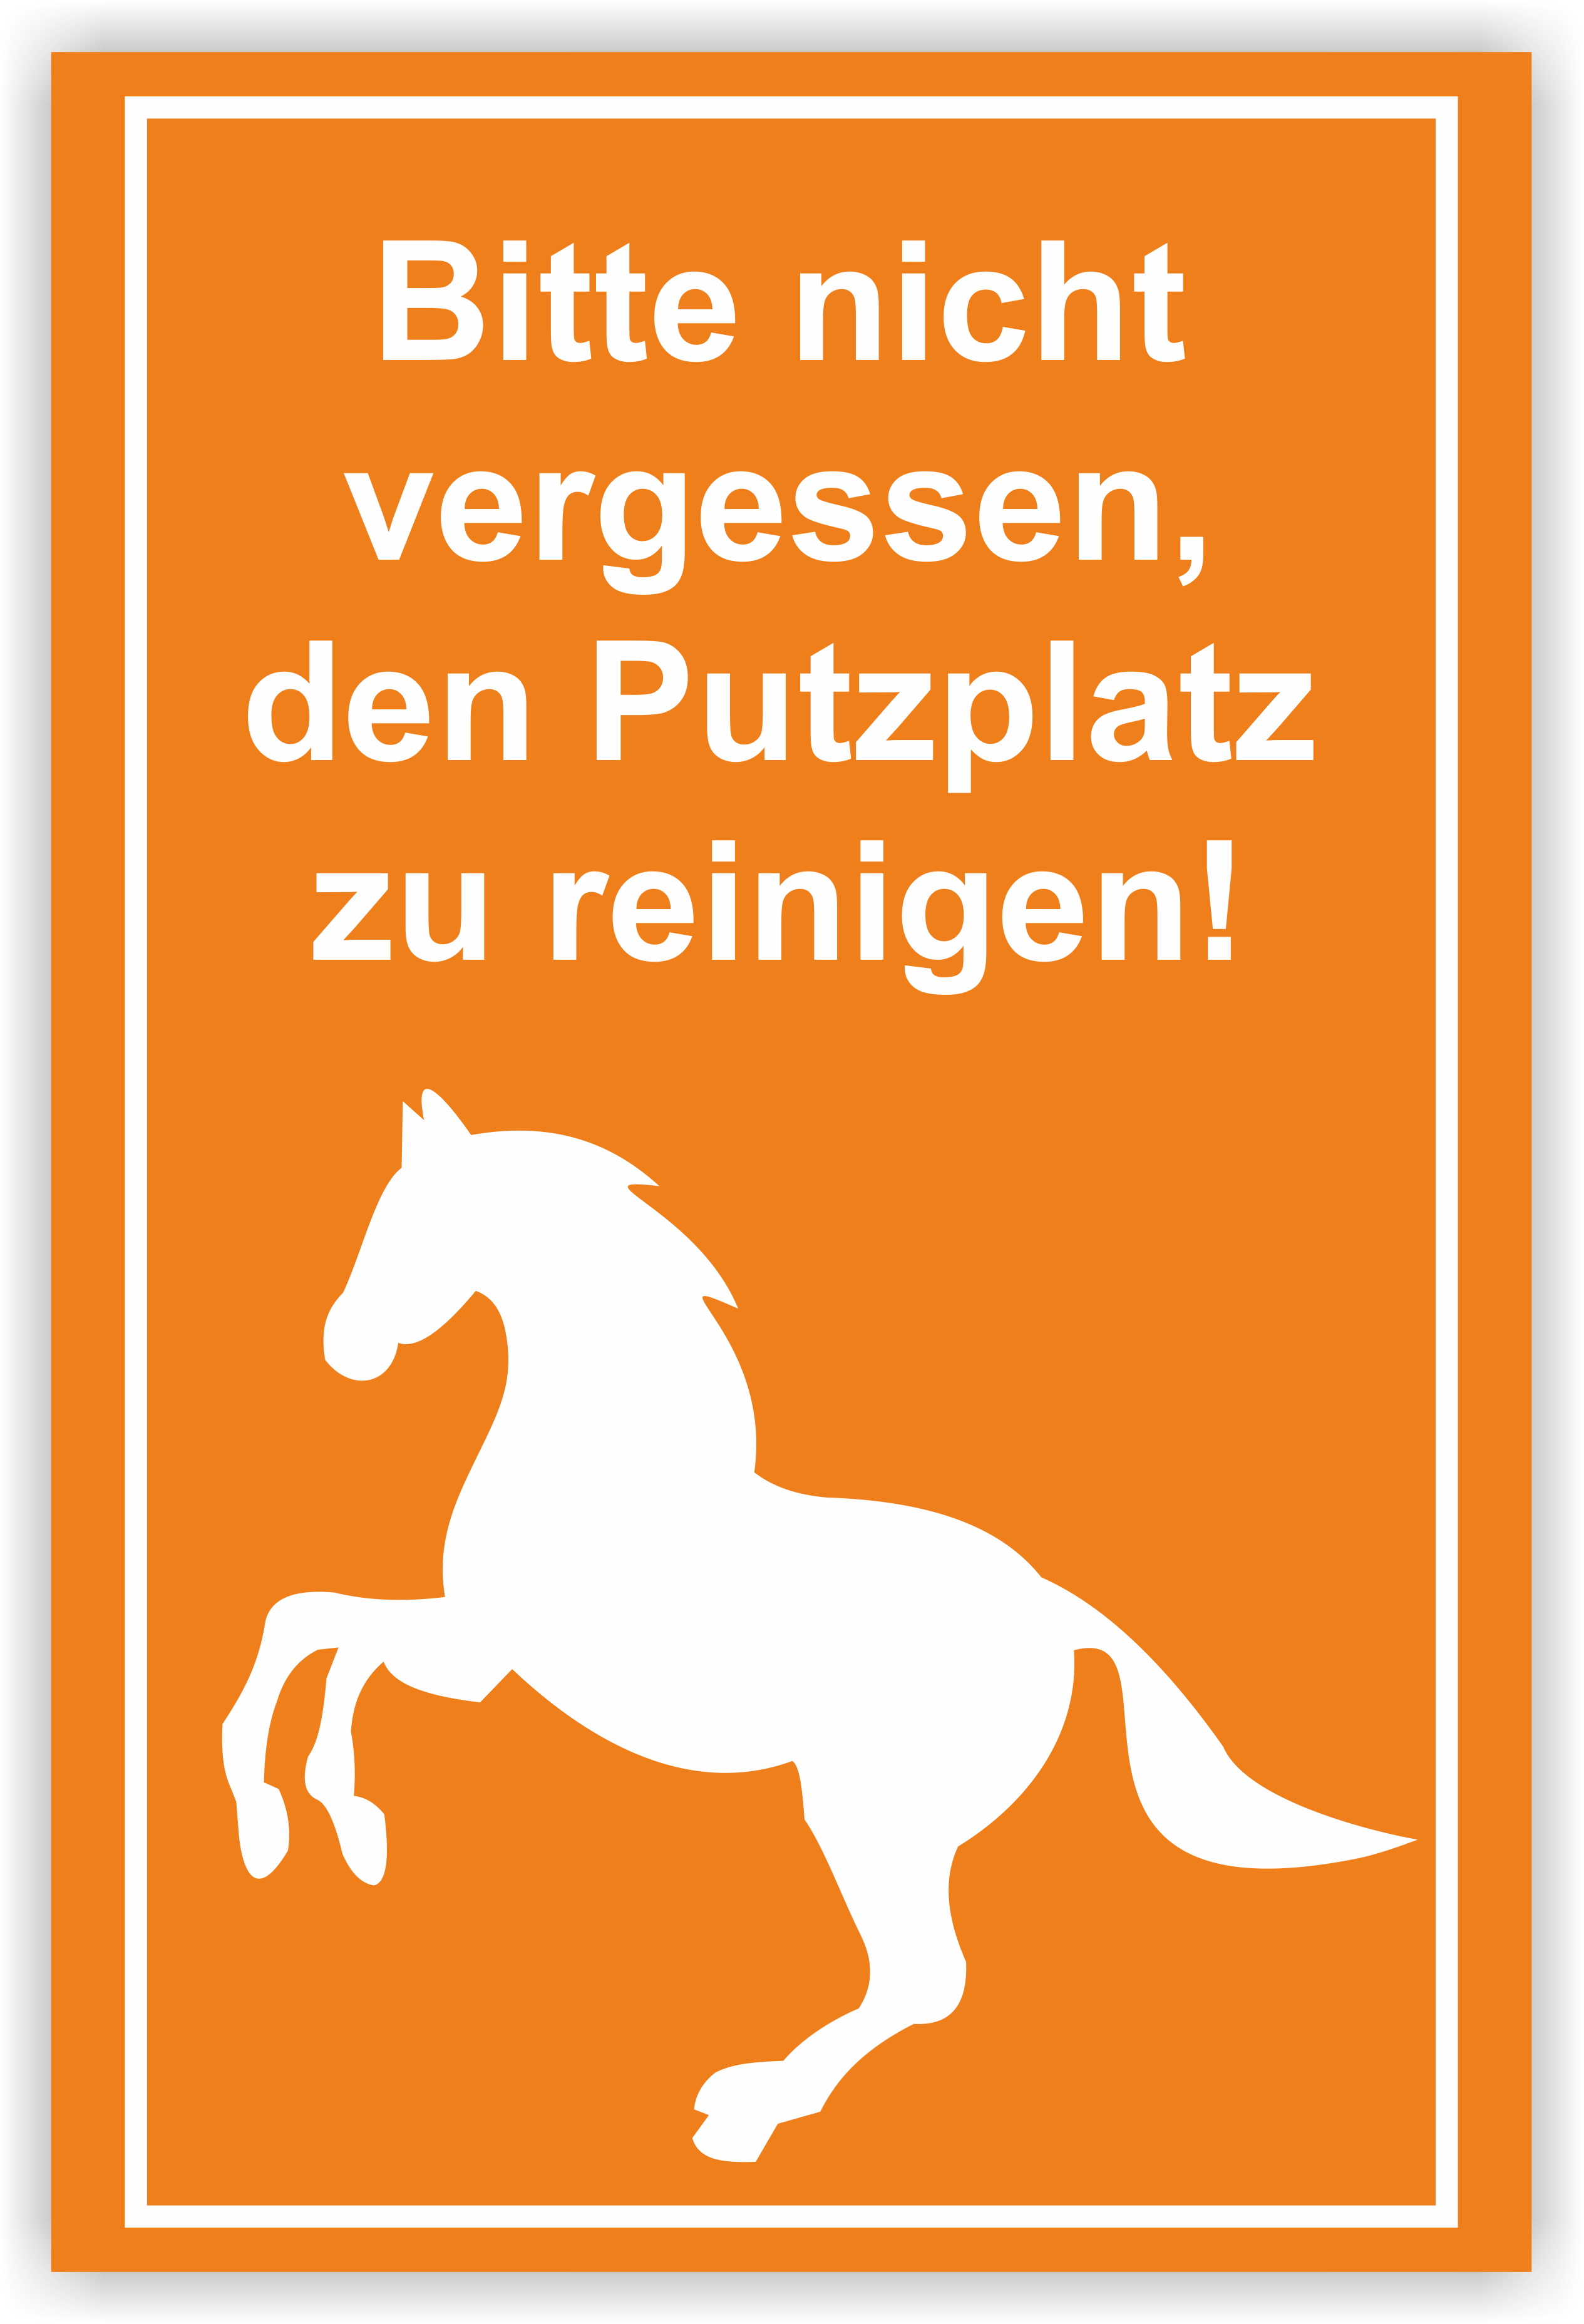 "Bitte Putzplatz reinigen!" Schild Design 1 | aus Alu oder PVC